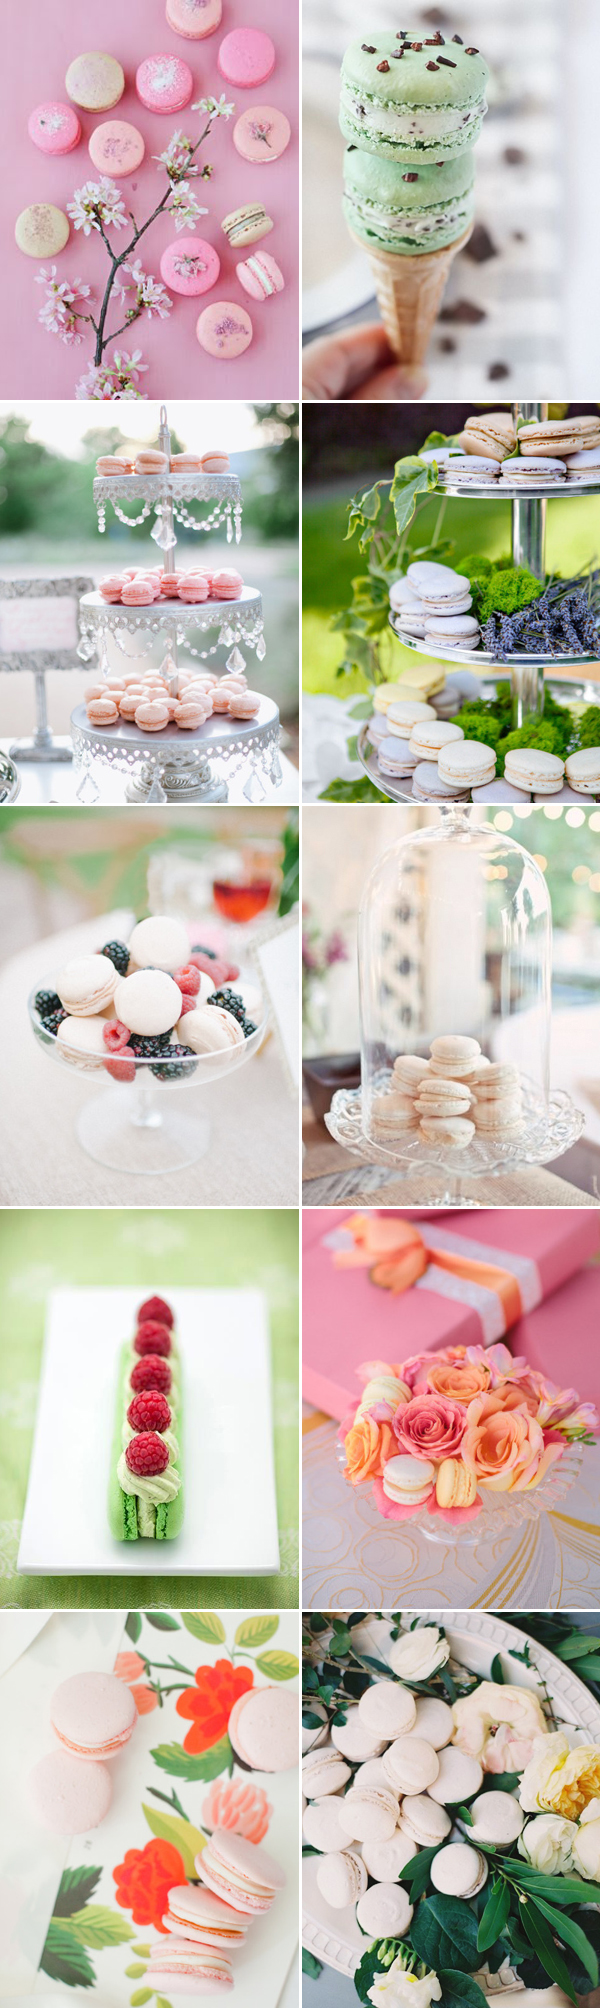 macaron wedding dessert ideas